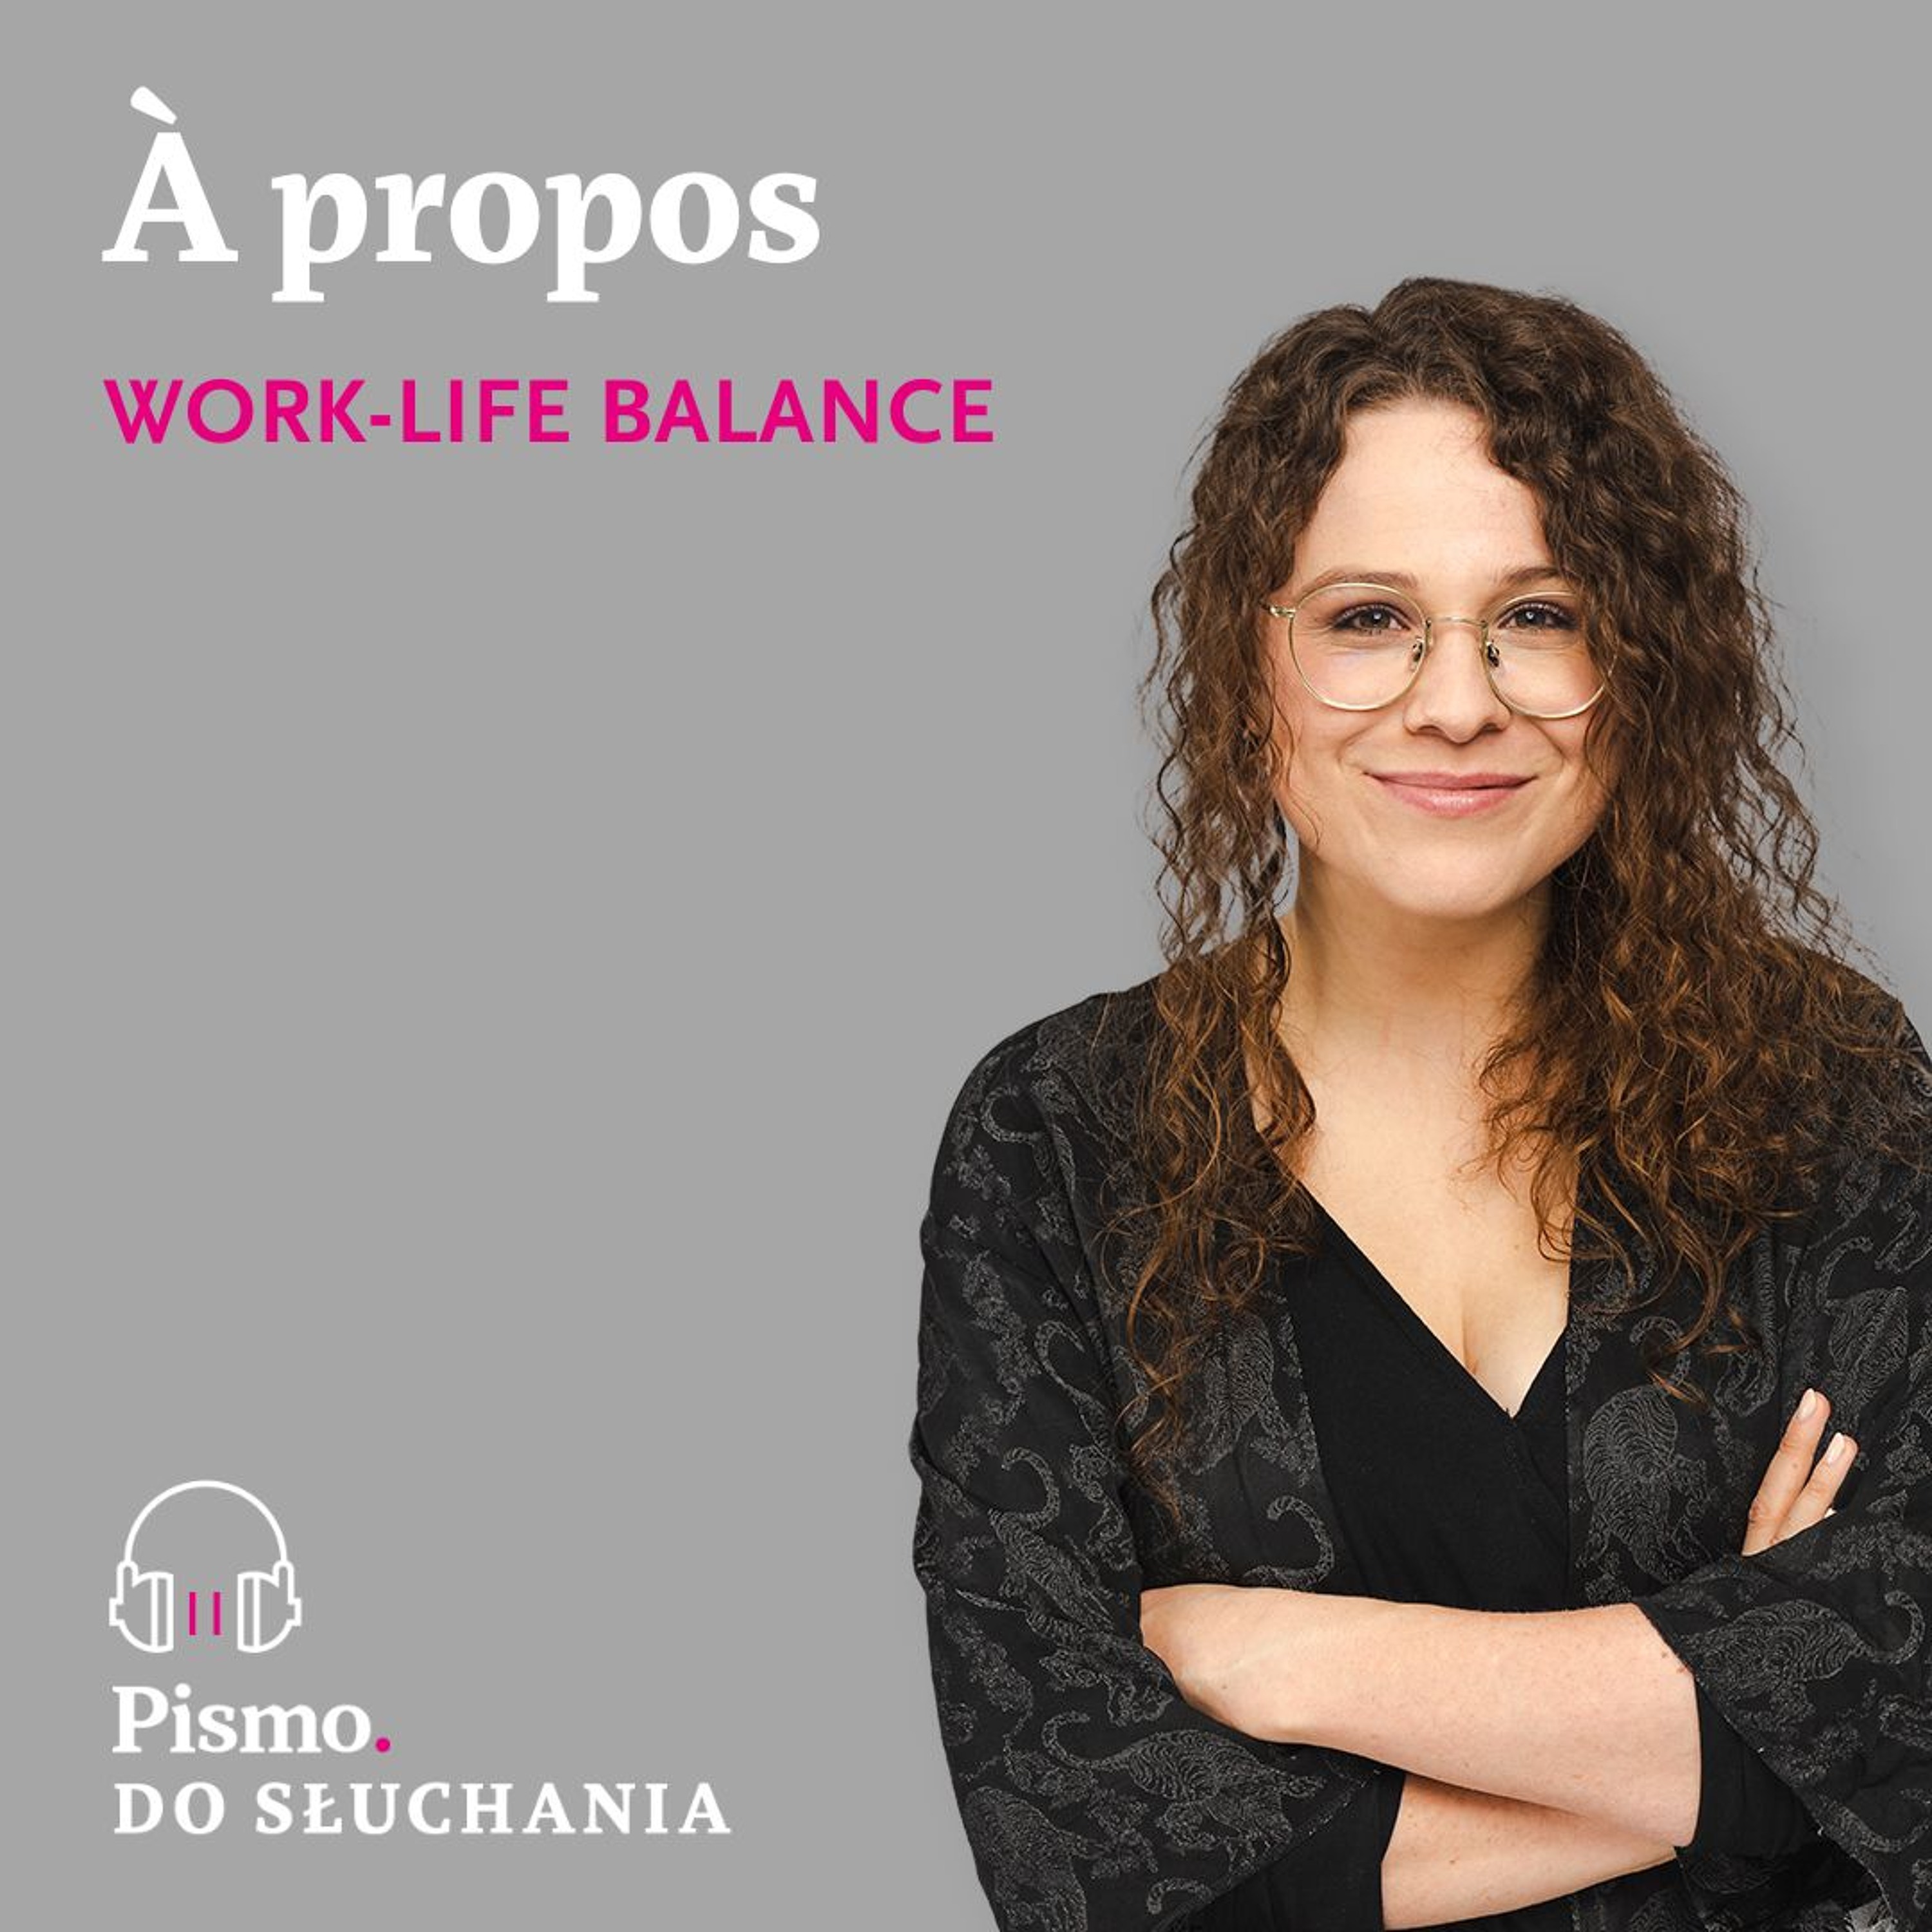 À propos work-life balance